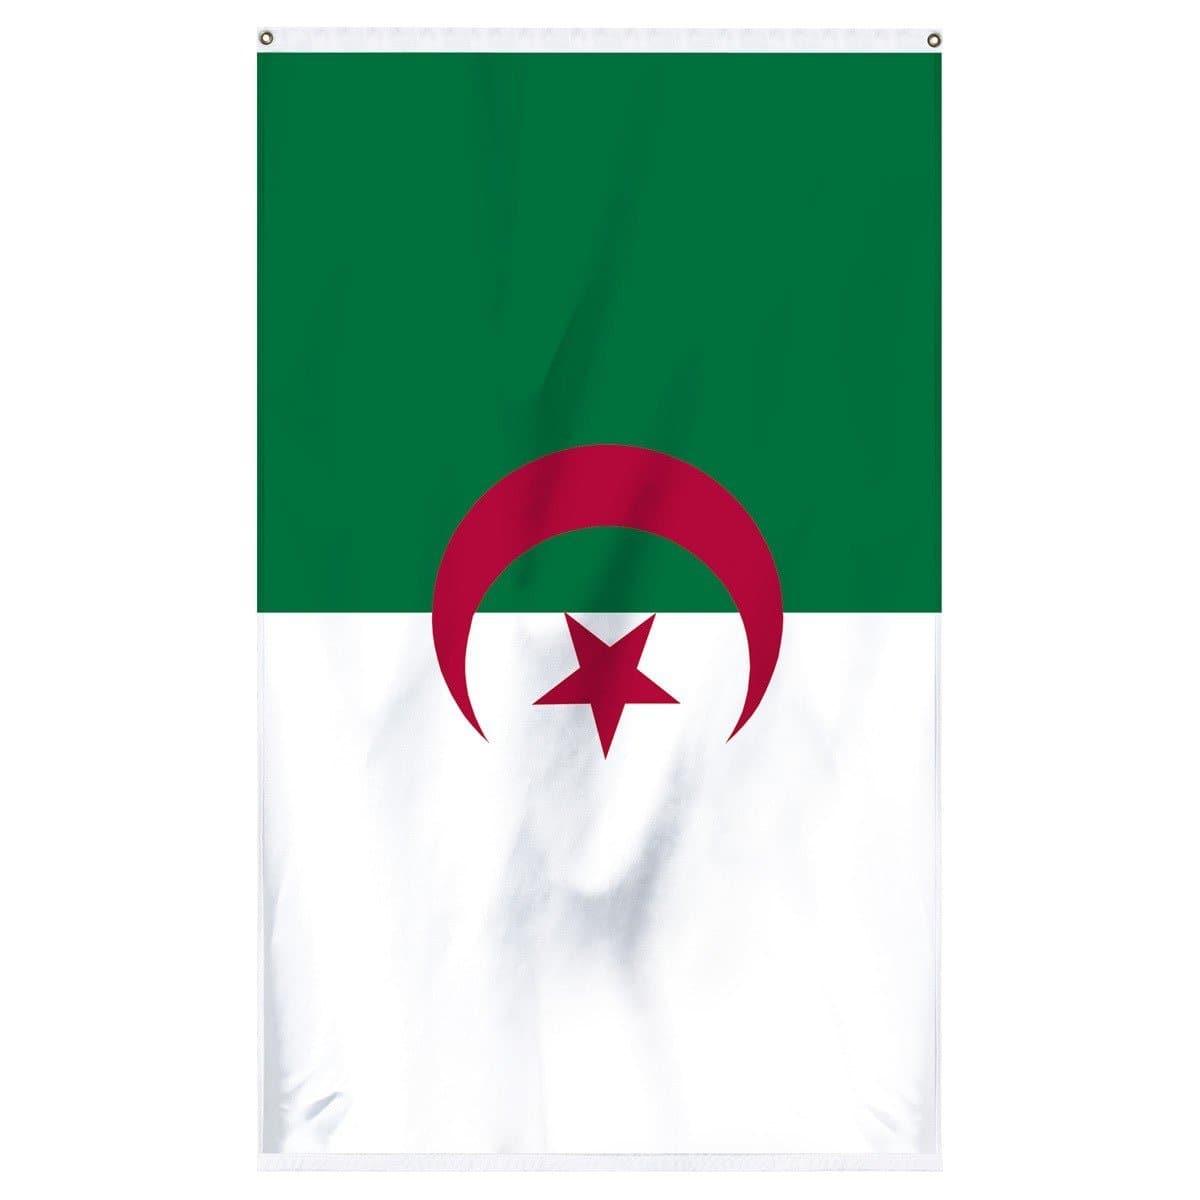 Algeria International flag for sale for flagpoles